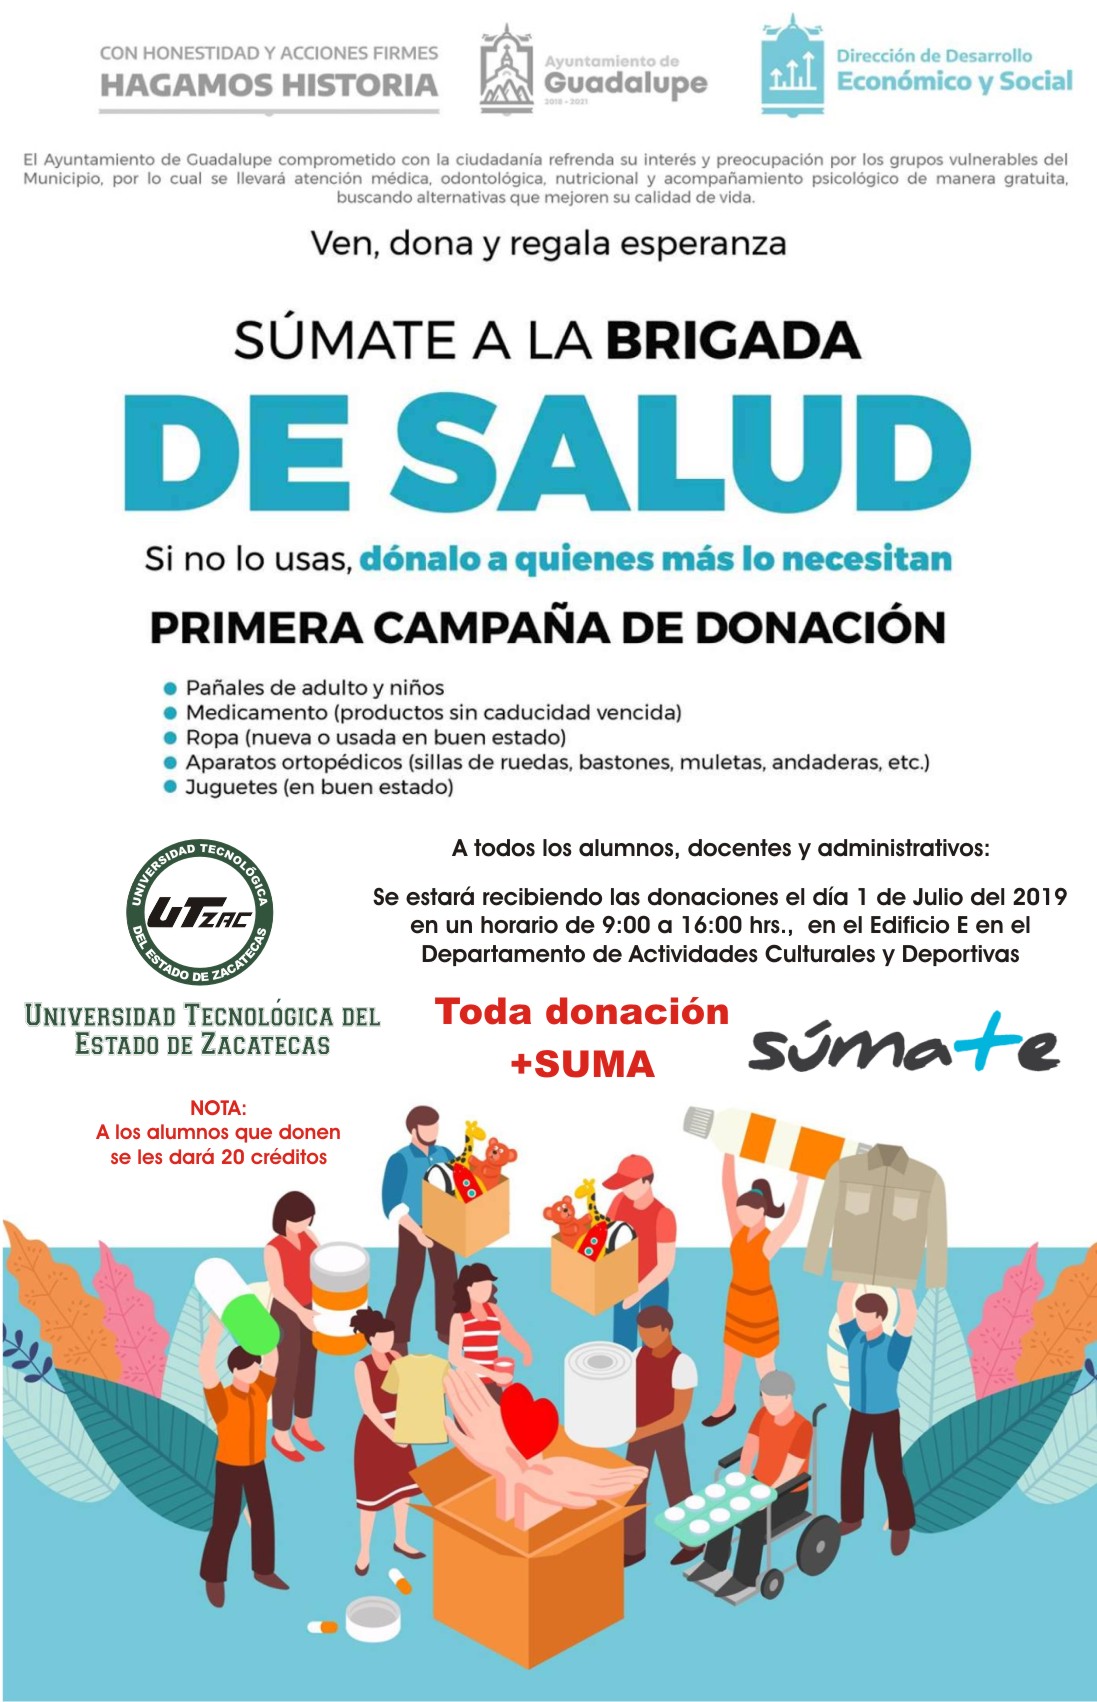 (Español) Primera campaña de donación